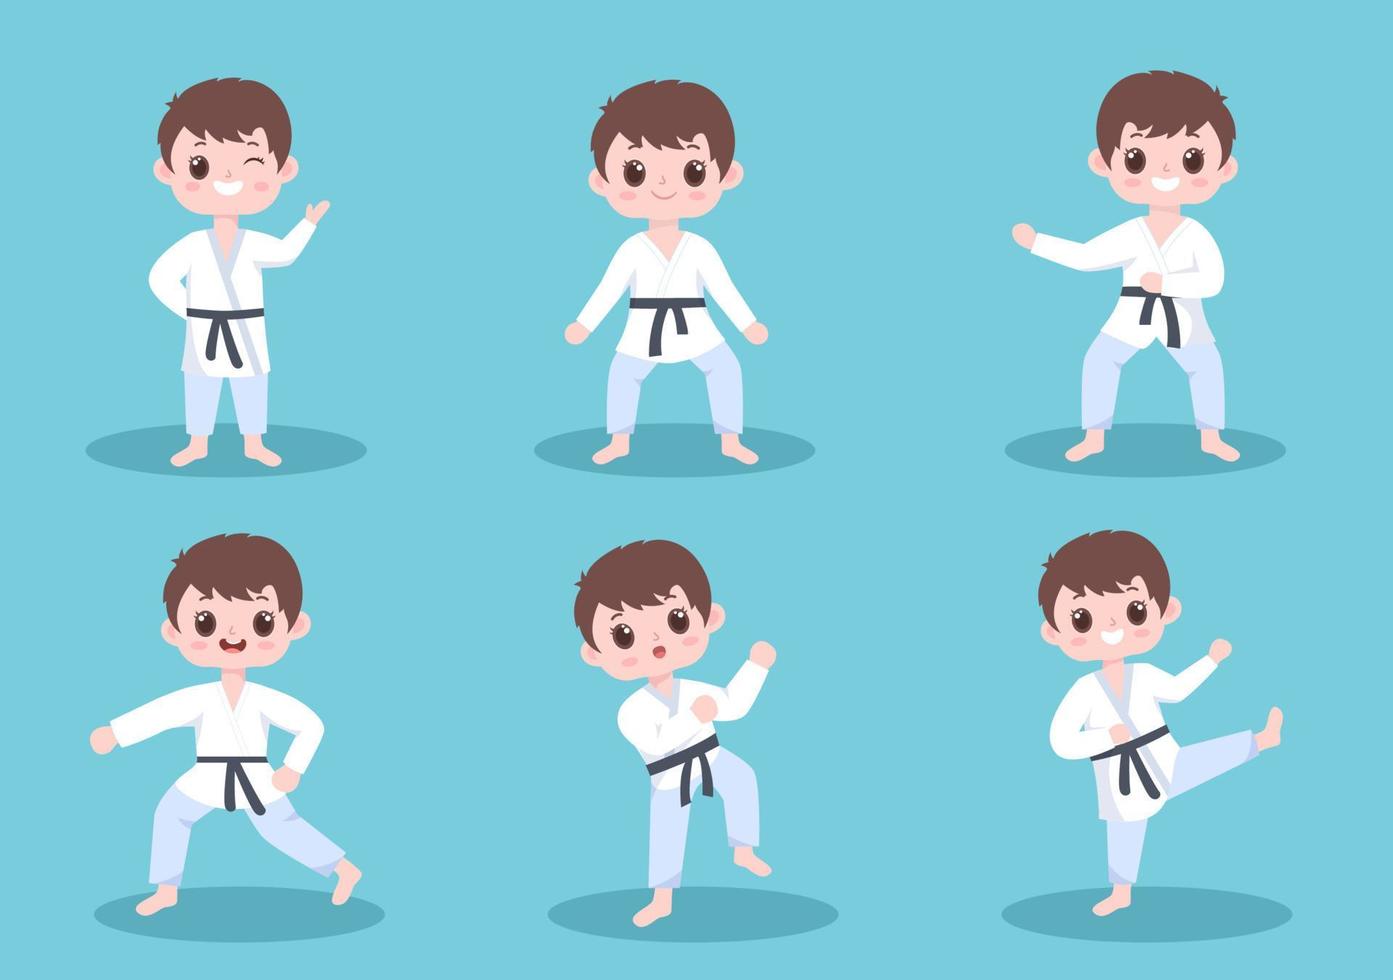 schattige tekenfilmkinderen die een aantal basisbewegingen van karate-vechtsporten doen, pose vechten en kimono dragen in een vlakke stijl vectorillustratie als achtergrond vector